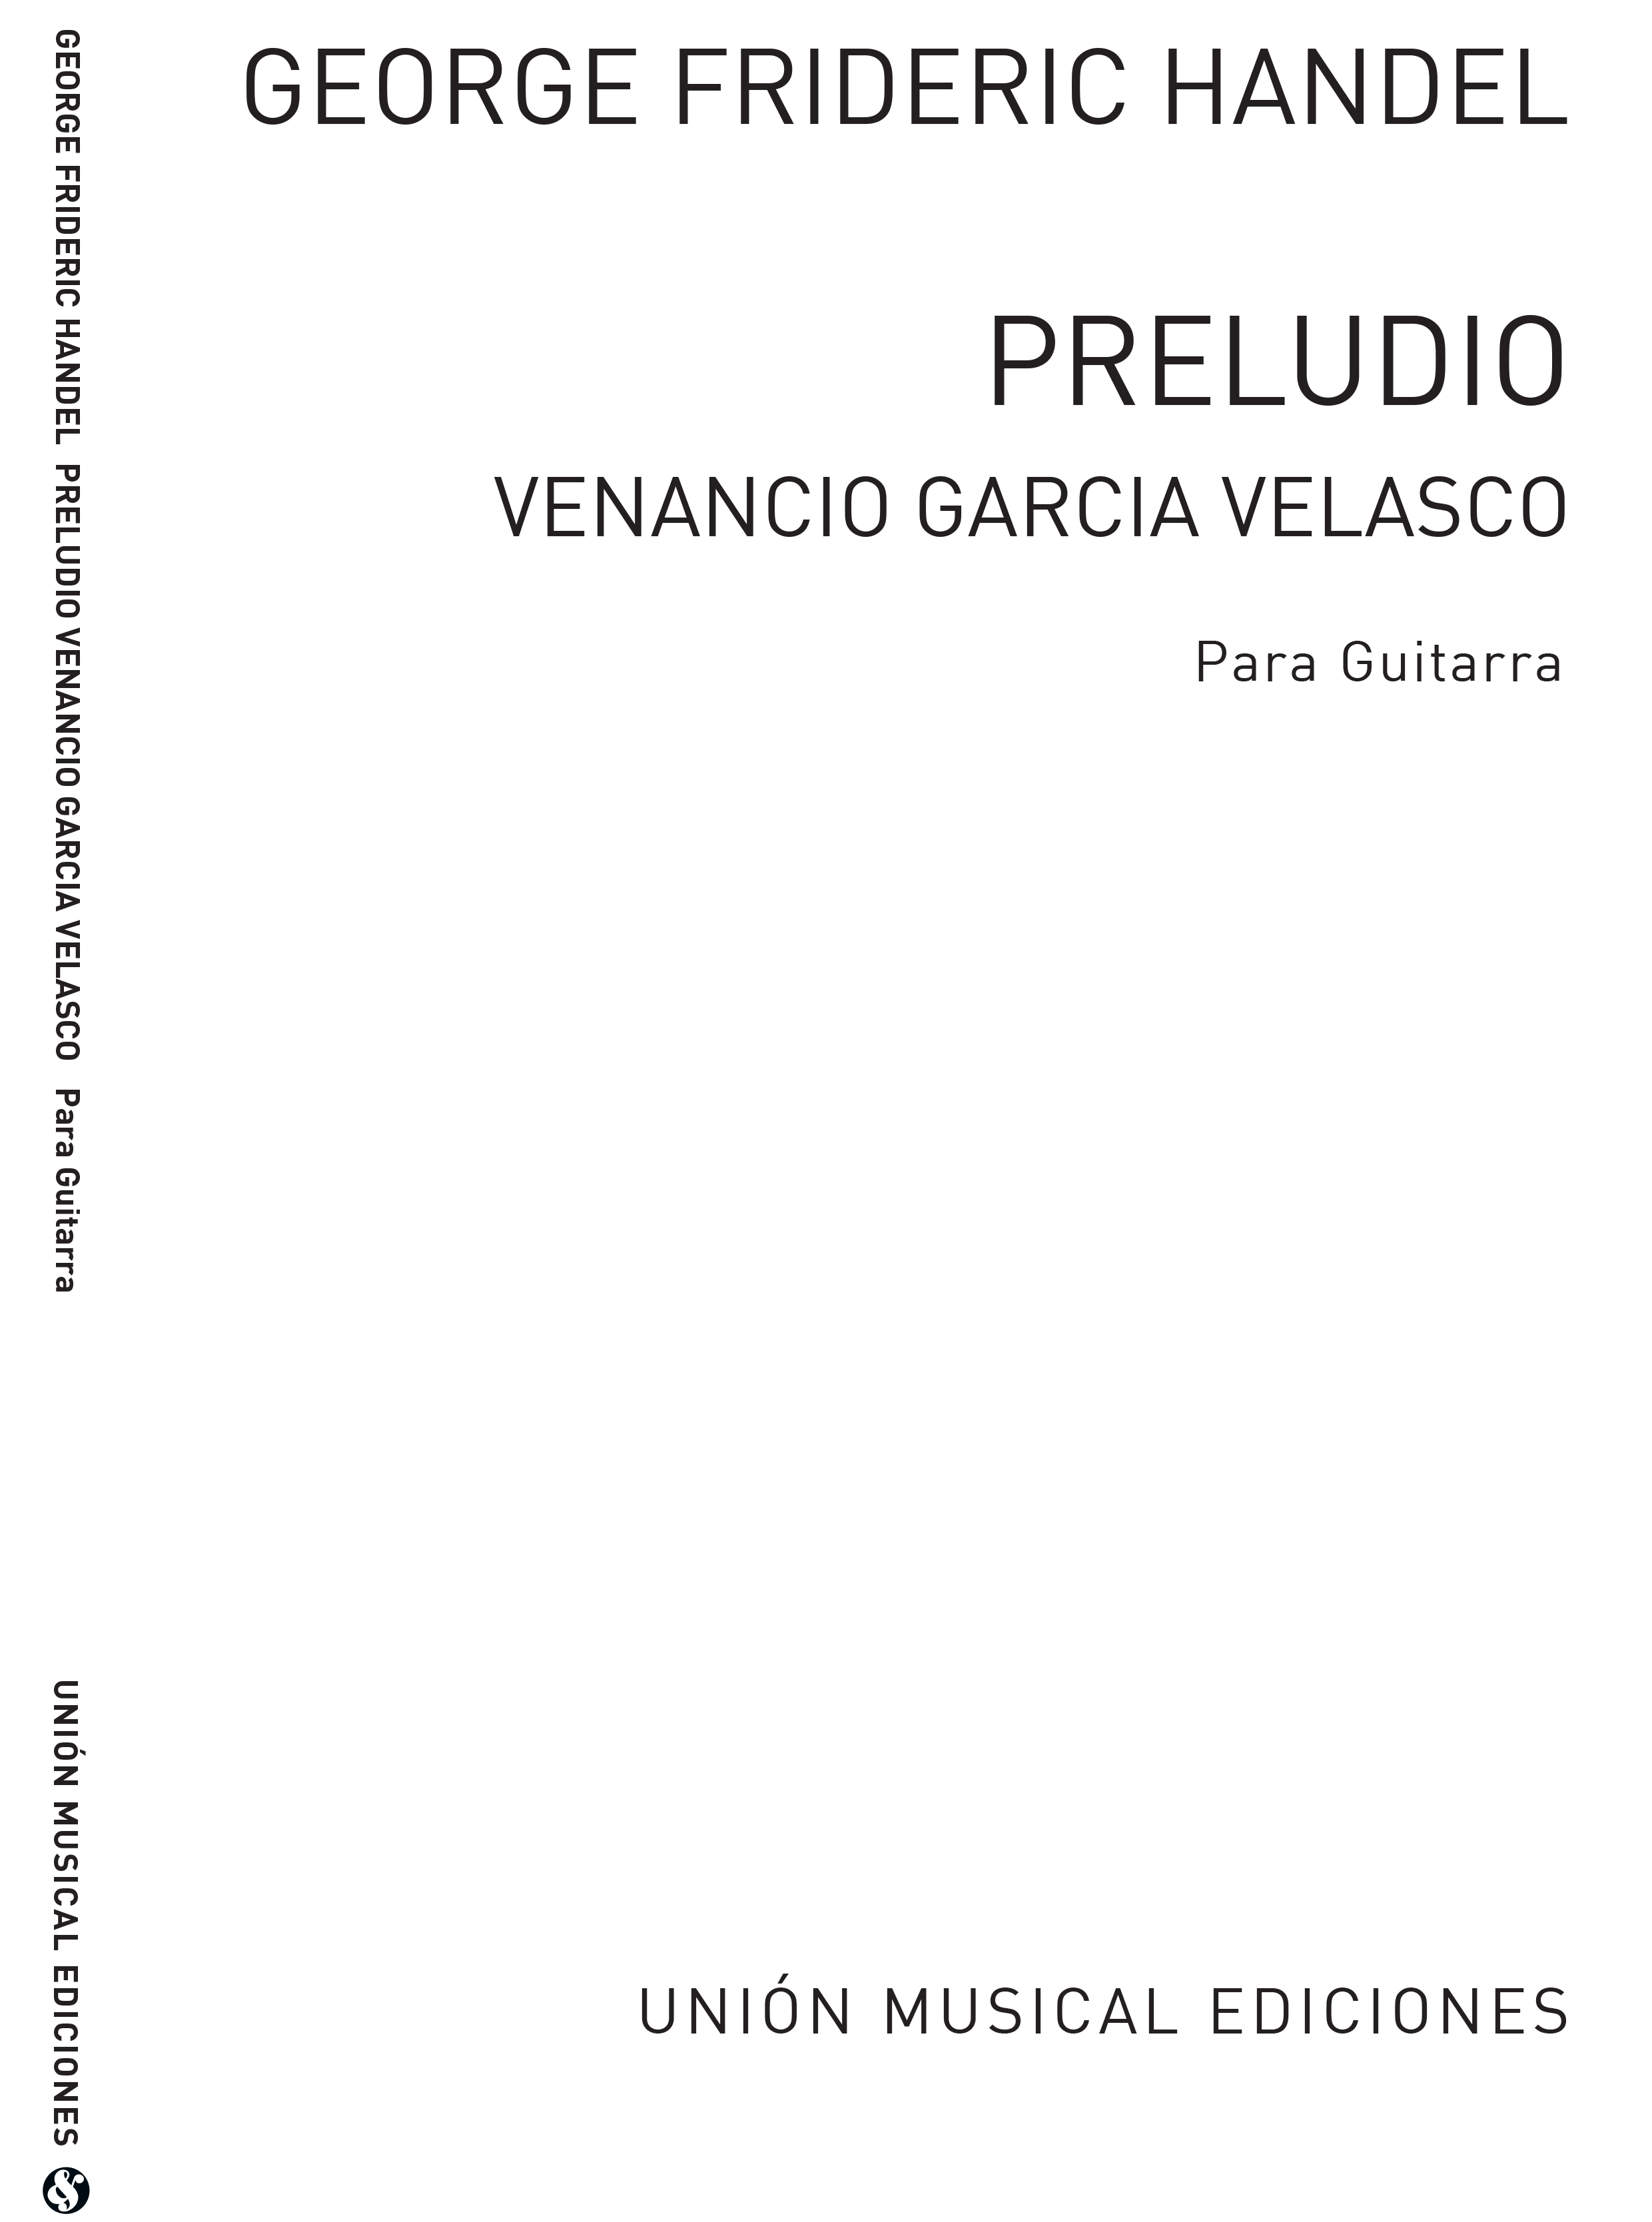 Georg Friedrich Händel: Preludio (Garcia Velasco): Guitar: Instrumental Work